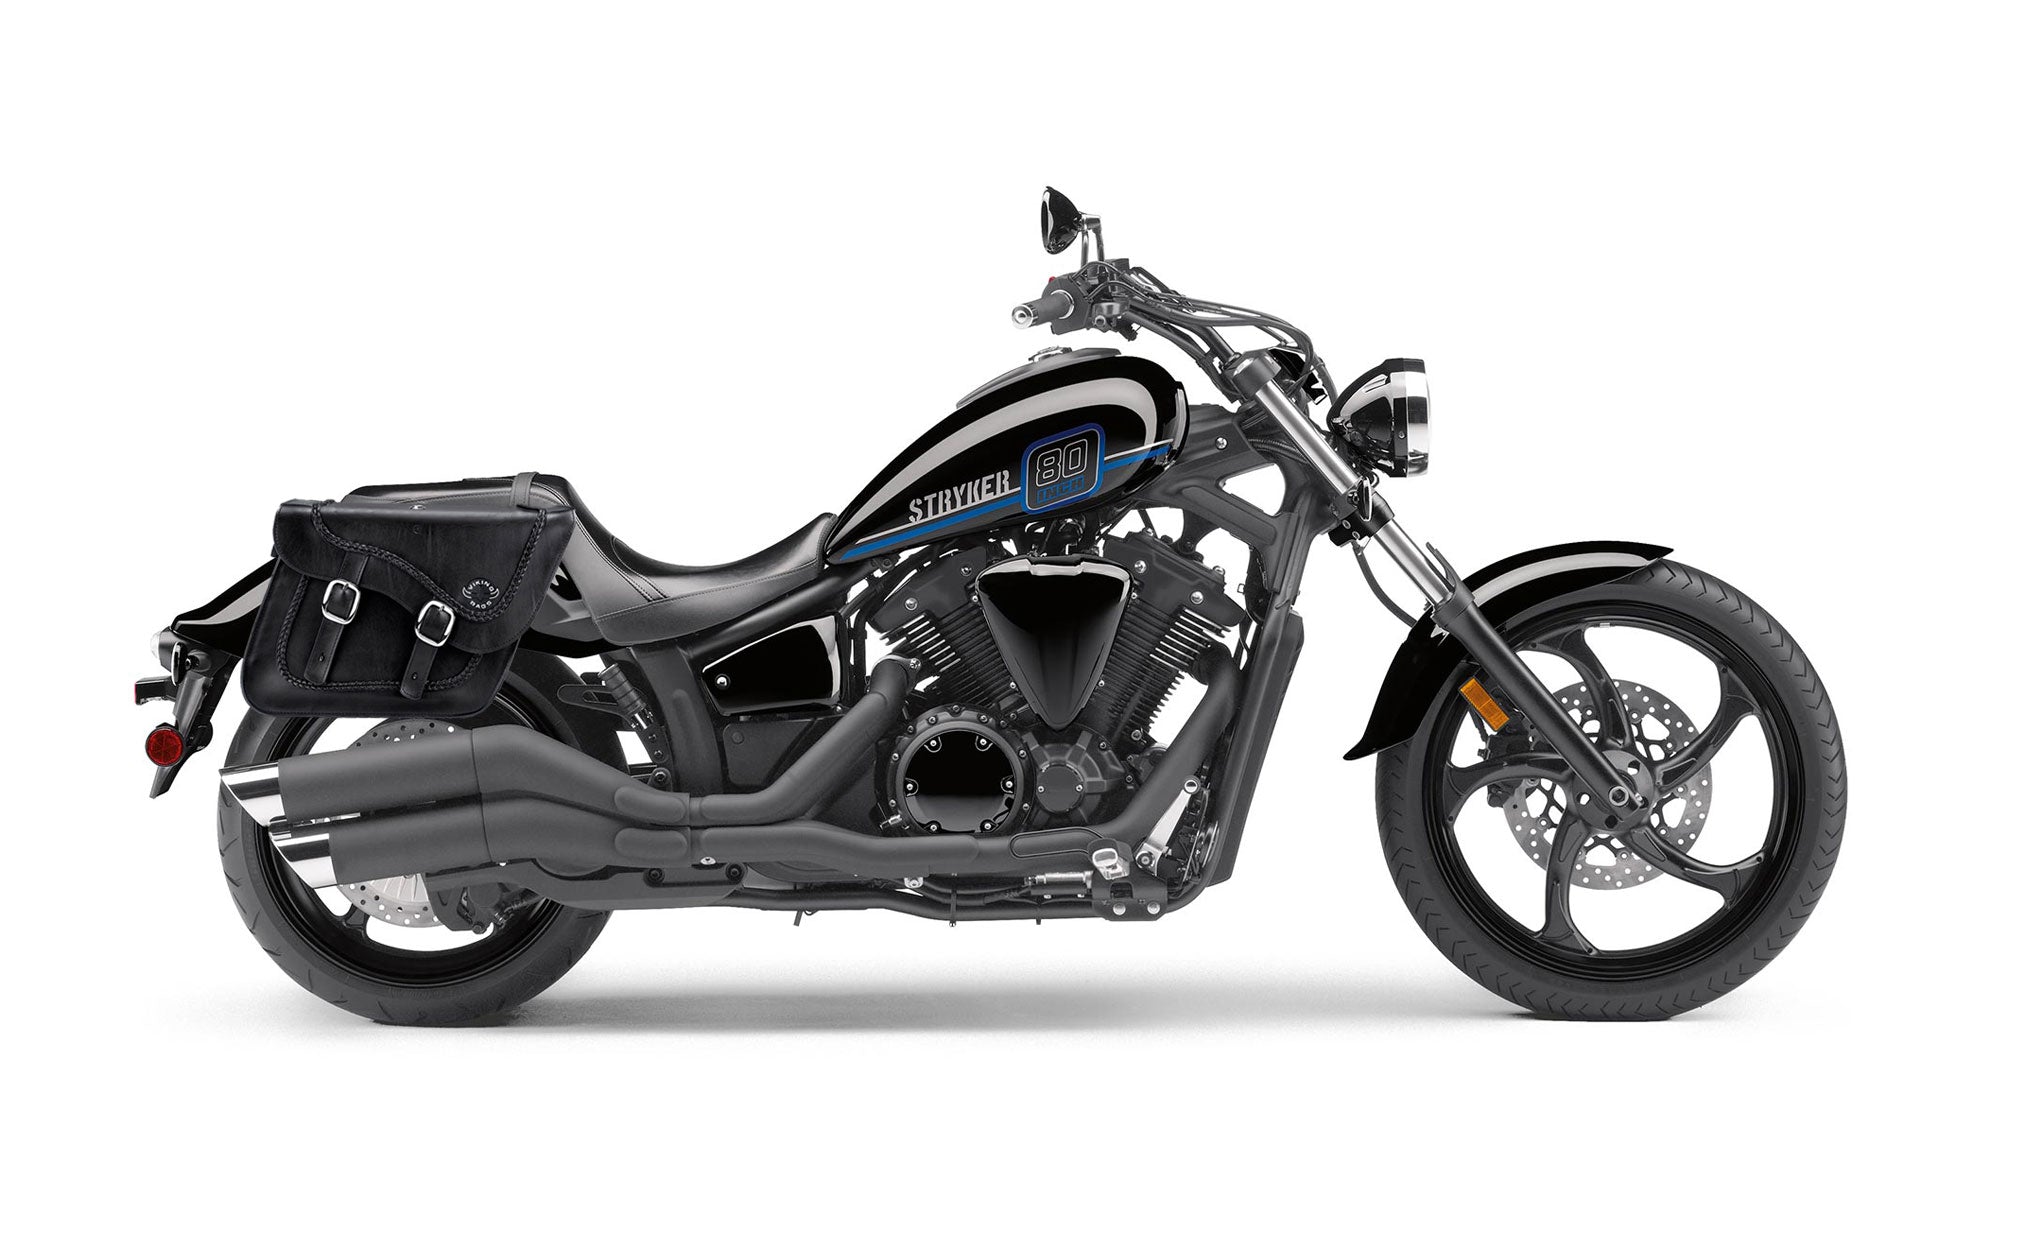 Viking Americano Yamaha Stryker Braided Large Leather Motorcycle Saddlebags on Bike Photo @expand